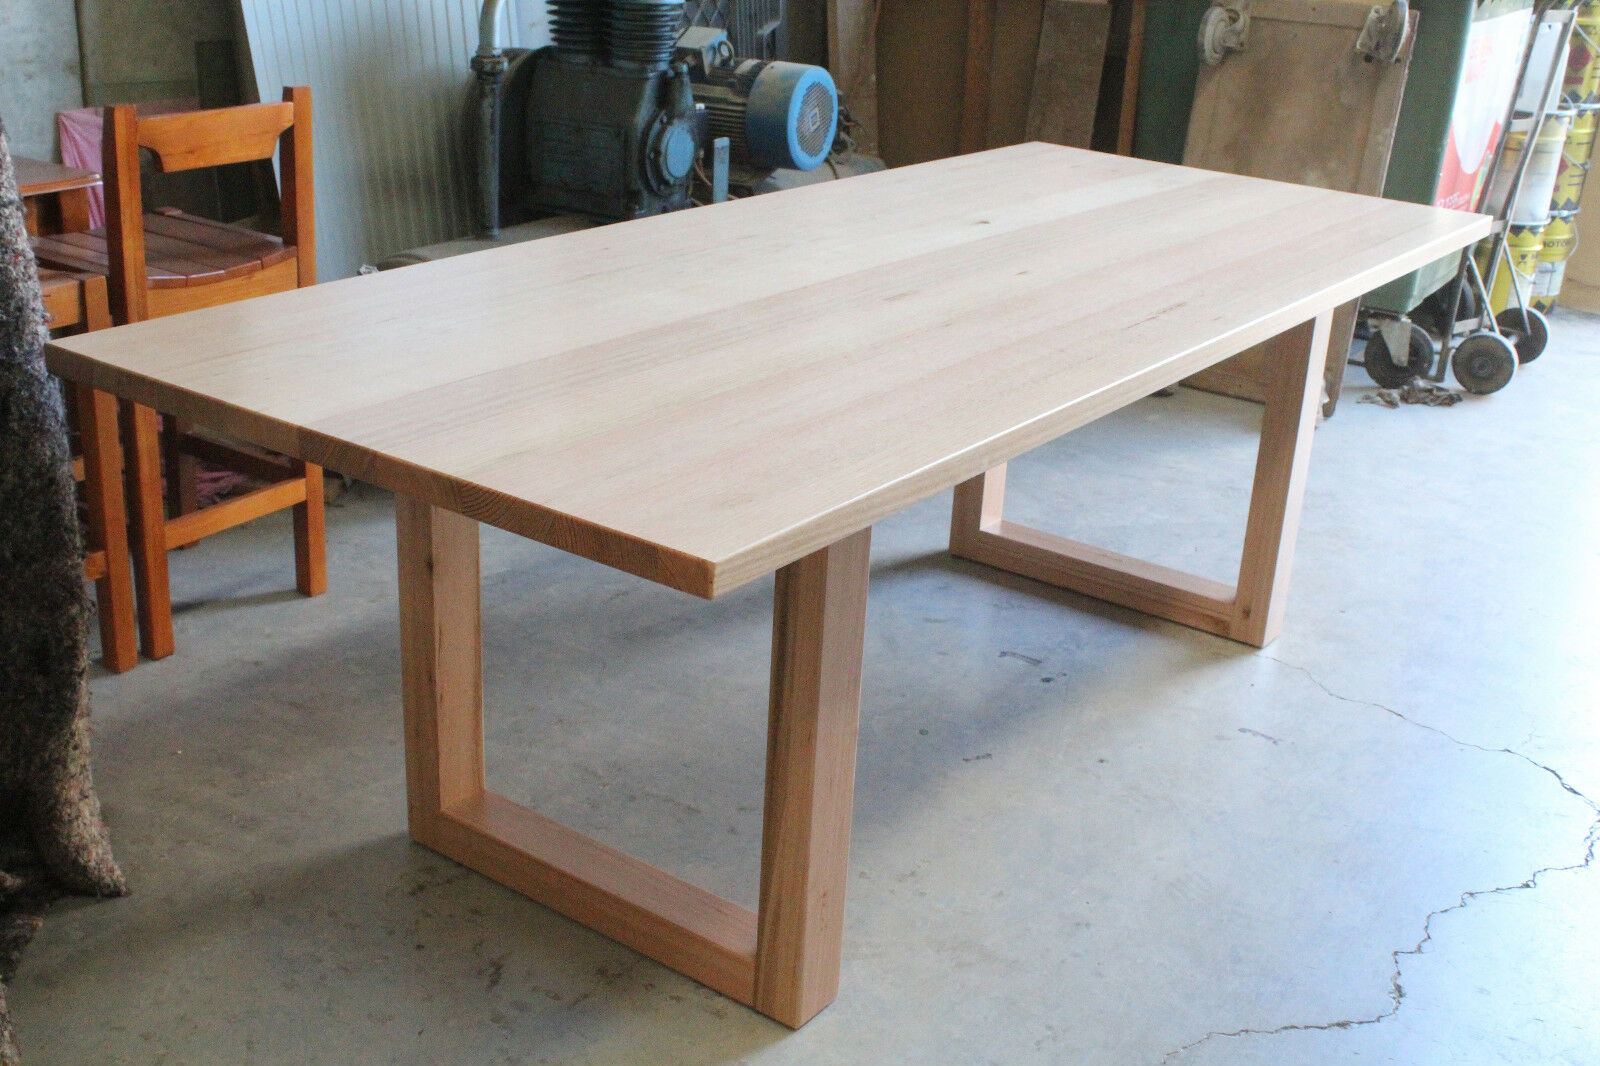 Tassie oak dining table 8 Seater - hardwood Timber- AUSFURNITURE